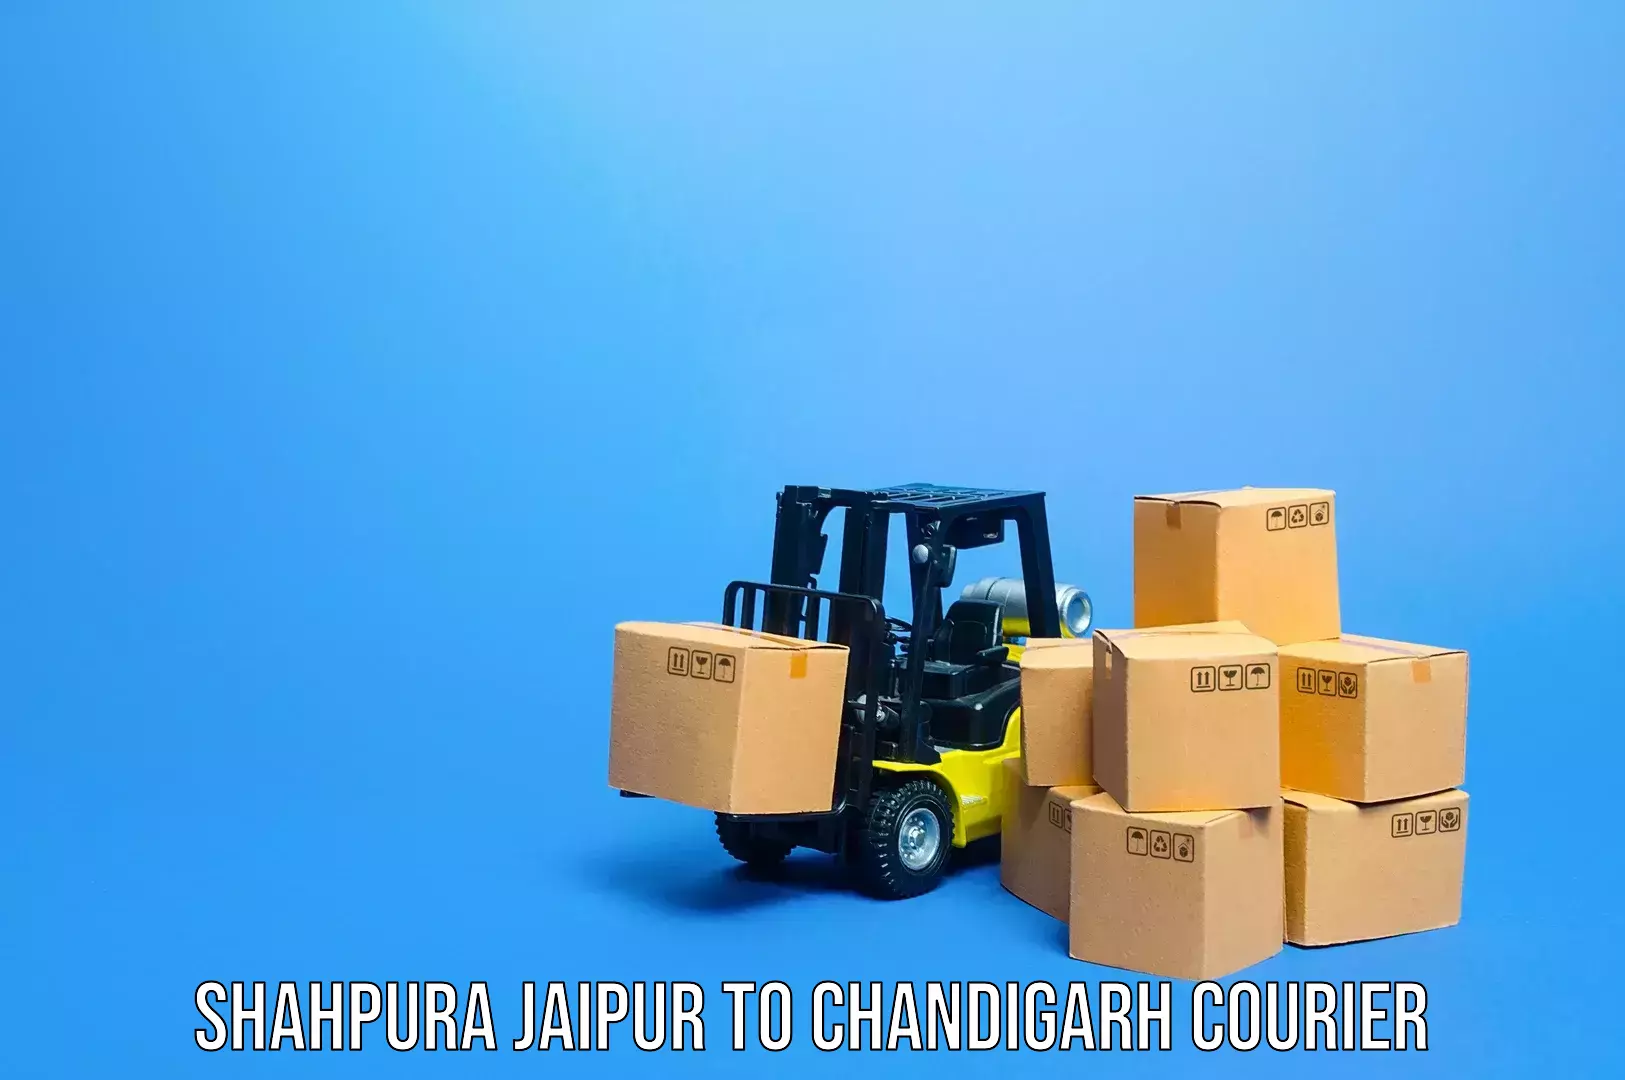 Light baggage courier Shahpura Jaipur to Chandigarh